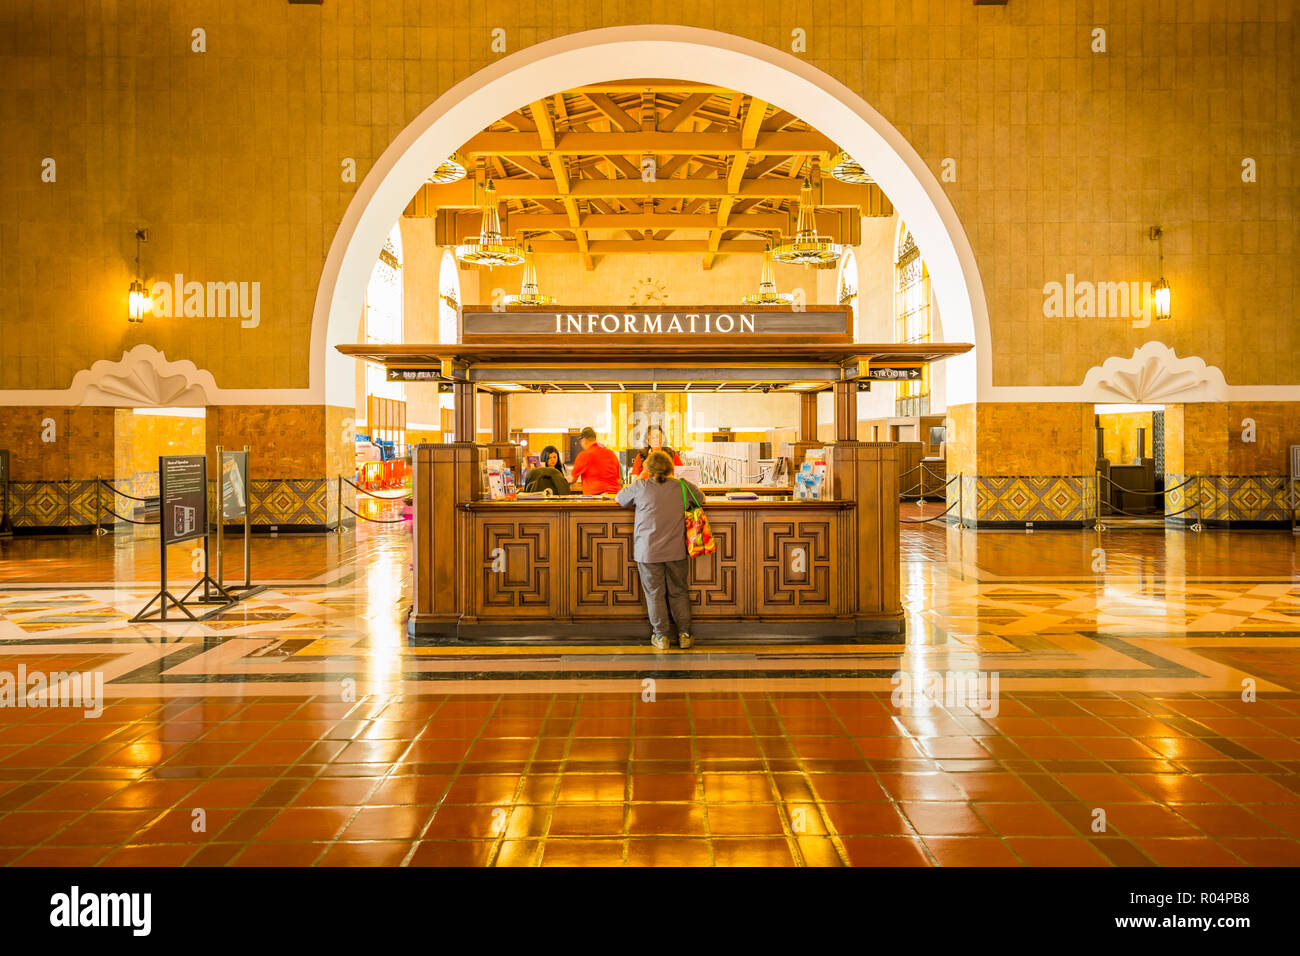 Vue de l'intérieur de la gare Union, Los Angeles, Californie, États-Unis d'Amérique, Amérique du Nord Banque D'Images